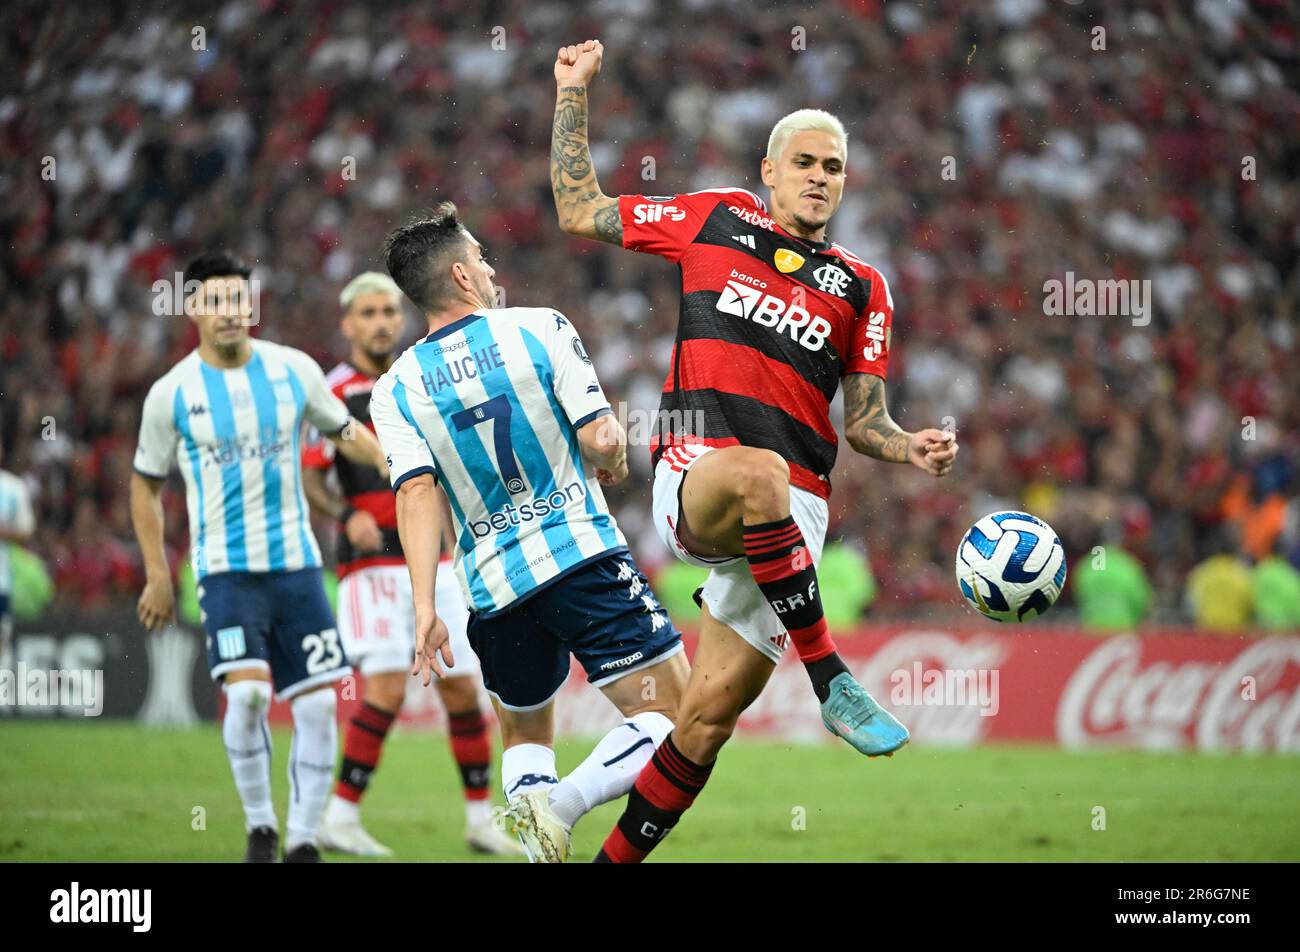 Flamengo v Racing Club, Copa Libertadores 23